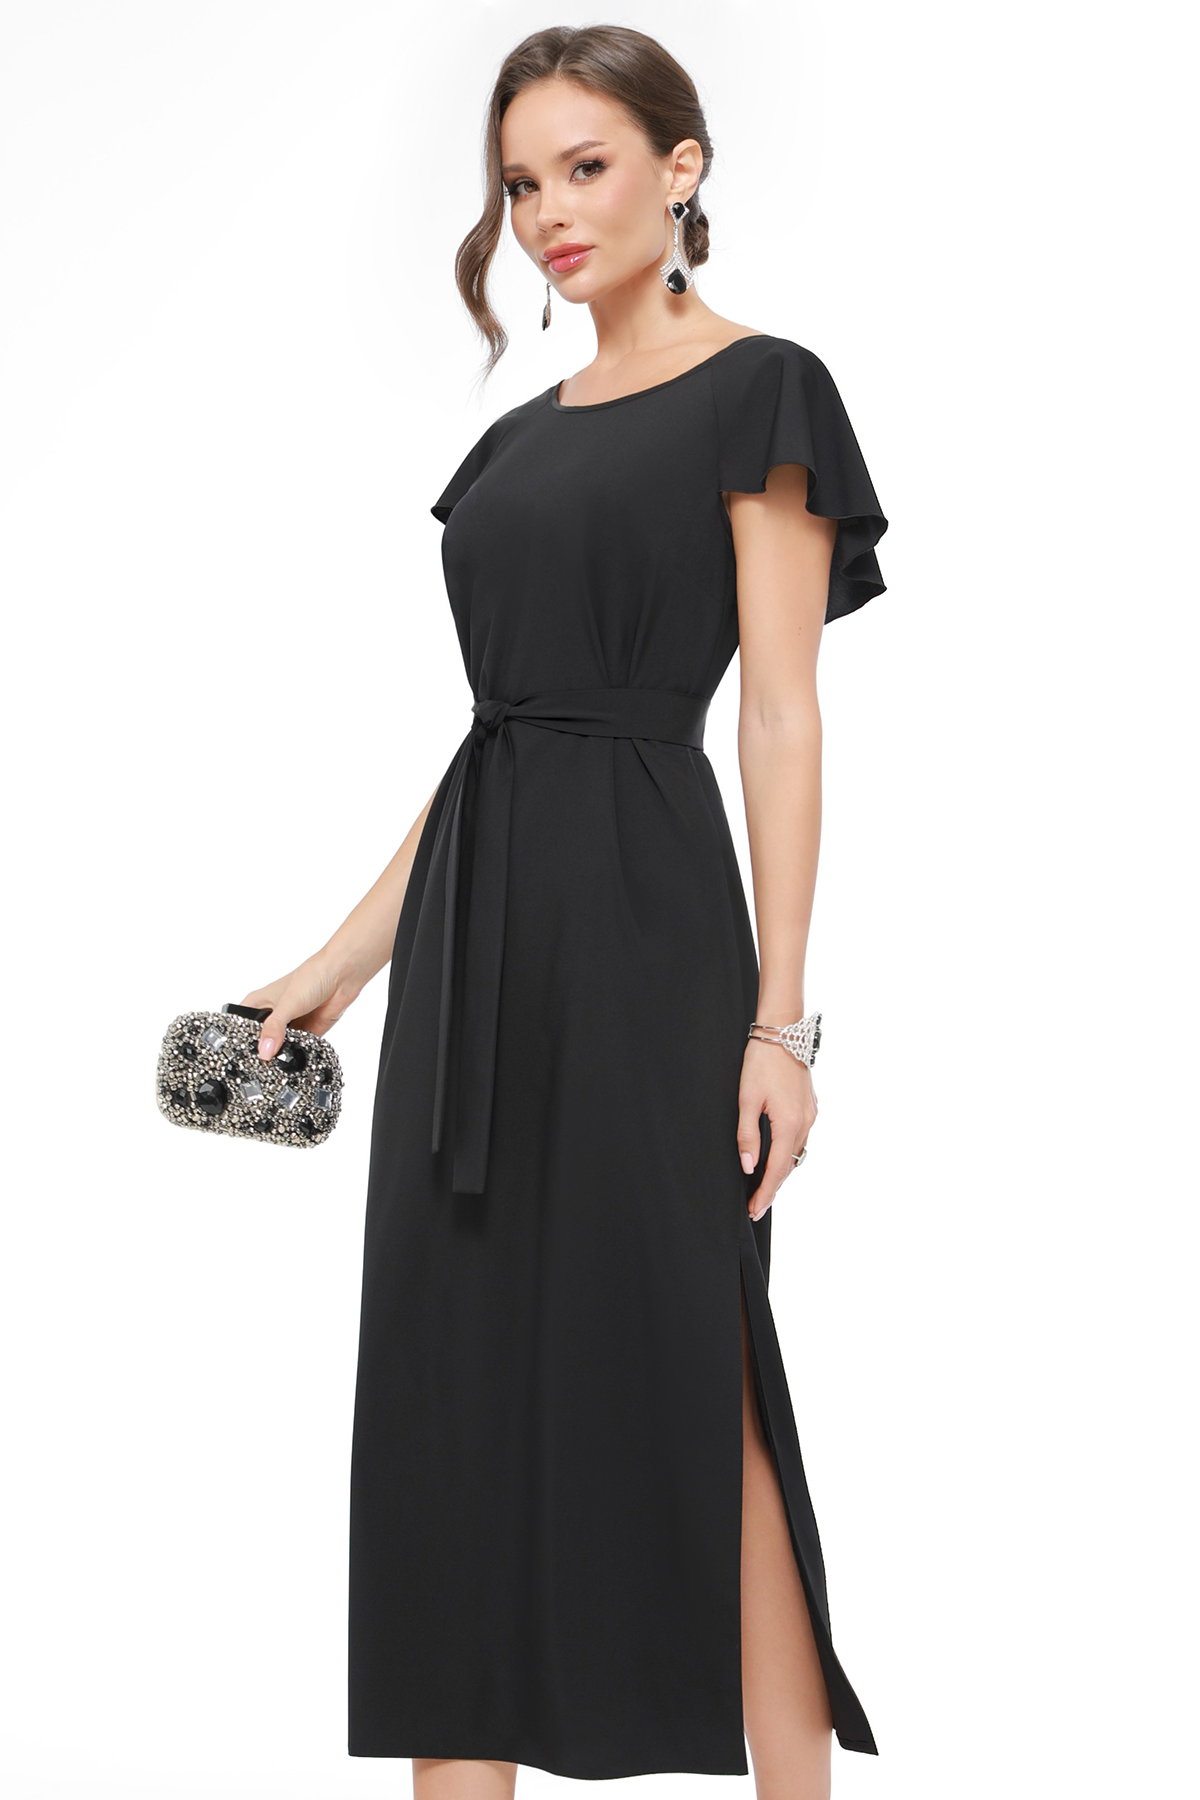 Платье женское DSTrend 0430 черное 44